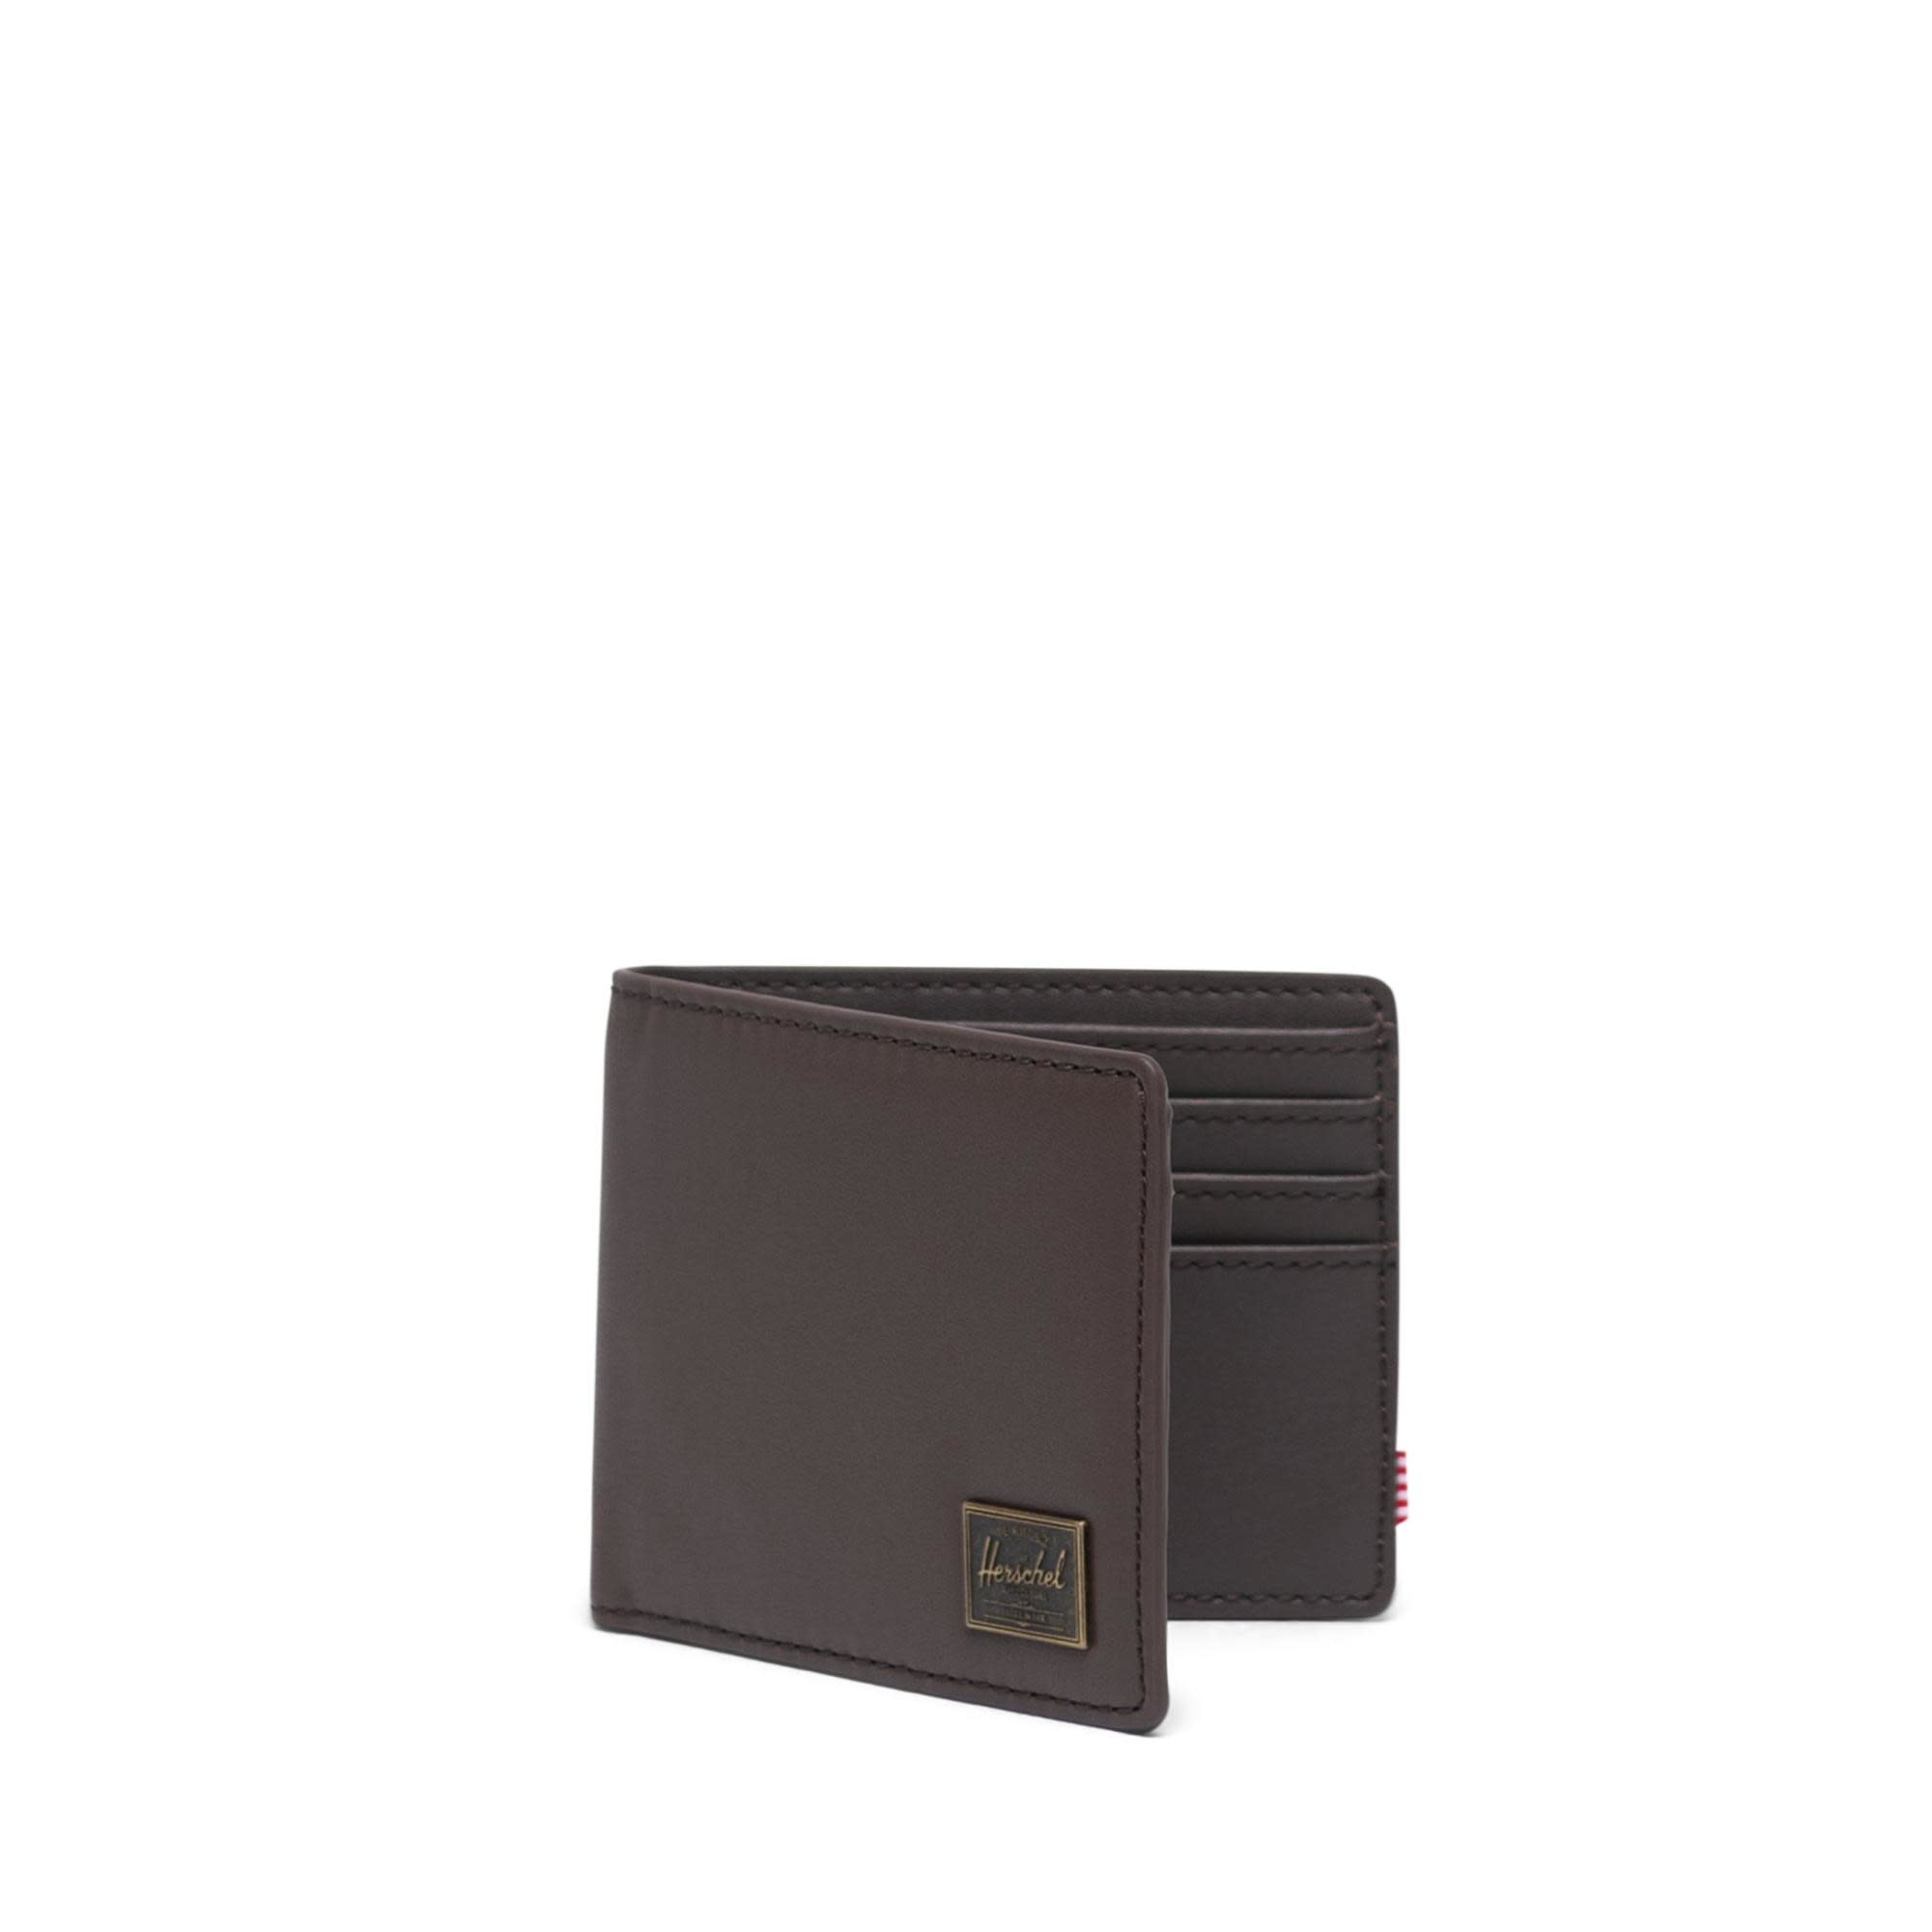 Herschel Supply Co. Herschel Hank Leather Wallet - Brown/RFID